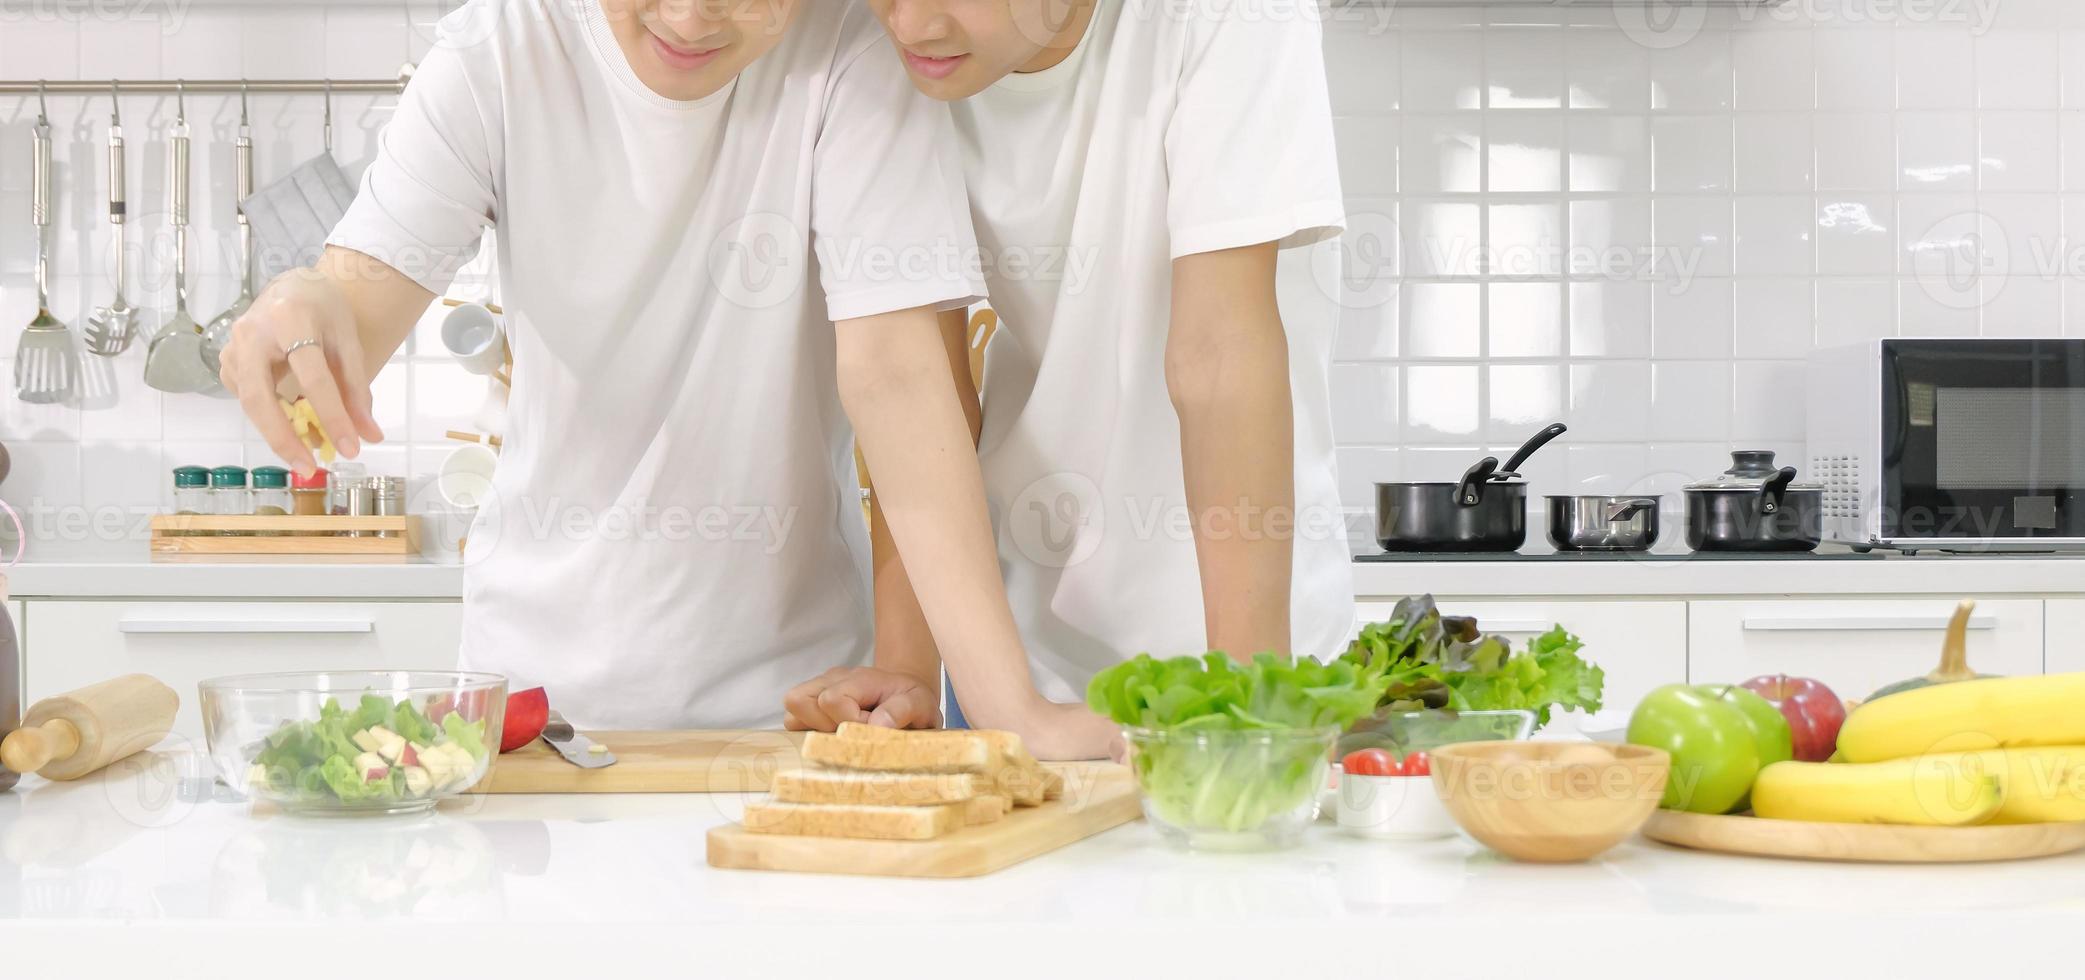 meio retrato asiático jovem lgbt masculino casal feliz cozinhar salada juntos no fundo branco da cozinha em casa. conceito de vida doméstica. foco seletivo. foto